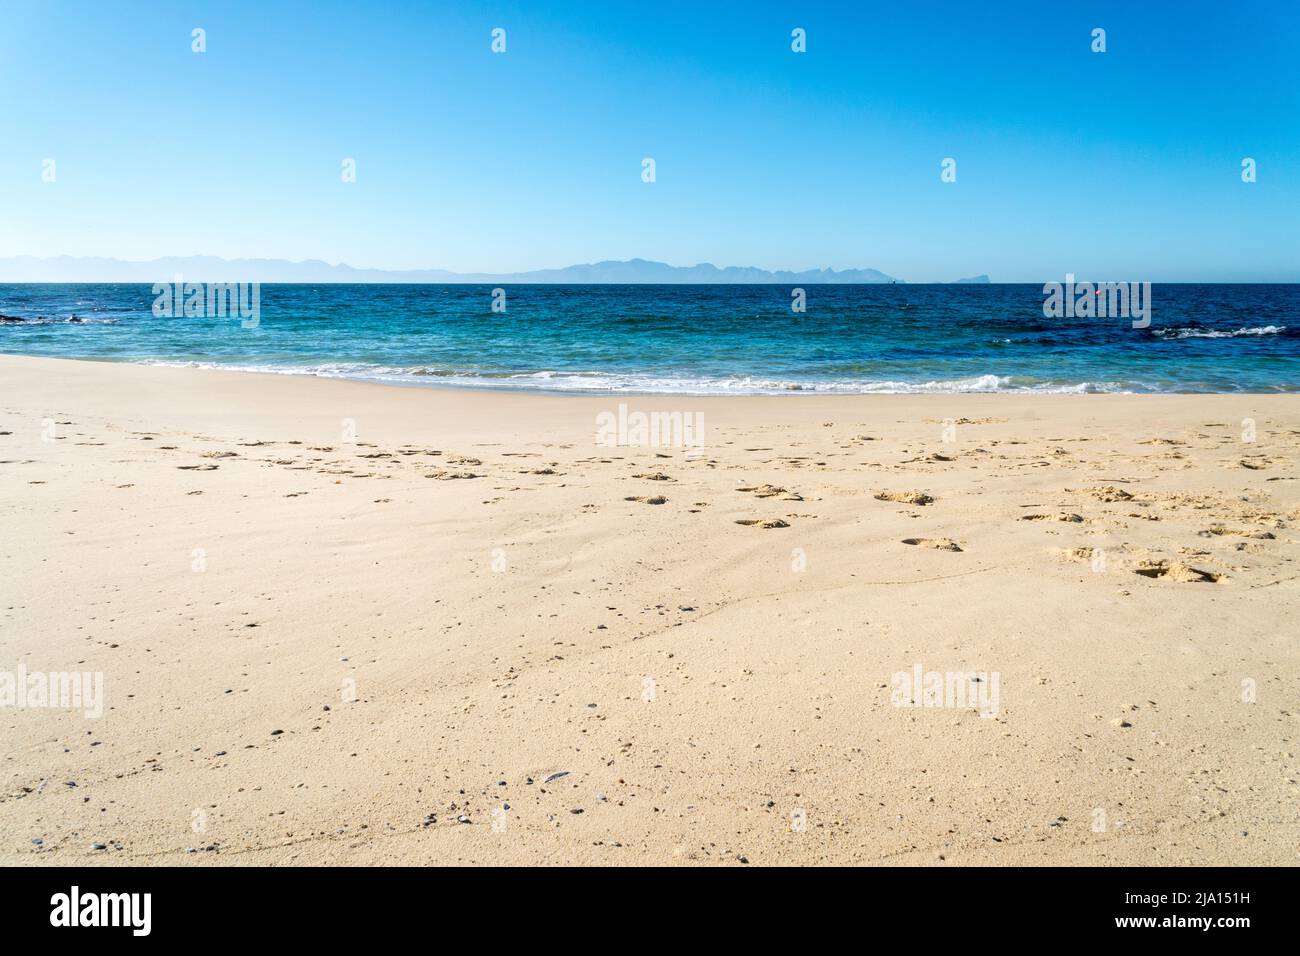 spiaggia di sabbia bianca vuota senza gente e mare calmo con cielo blu e montagne nuvoloso in background concetto meteo e clima Foto Stock